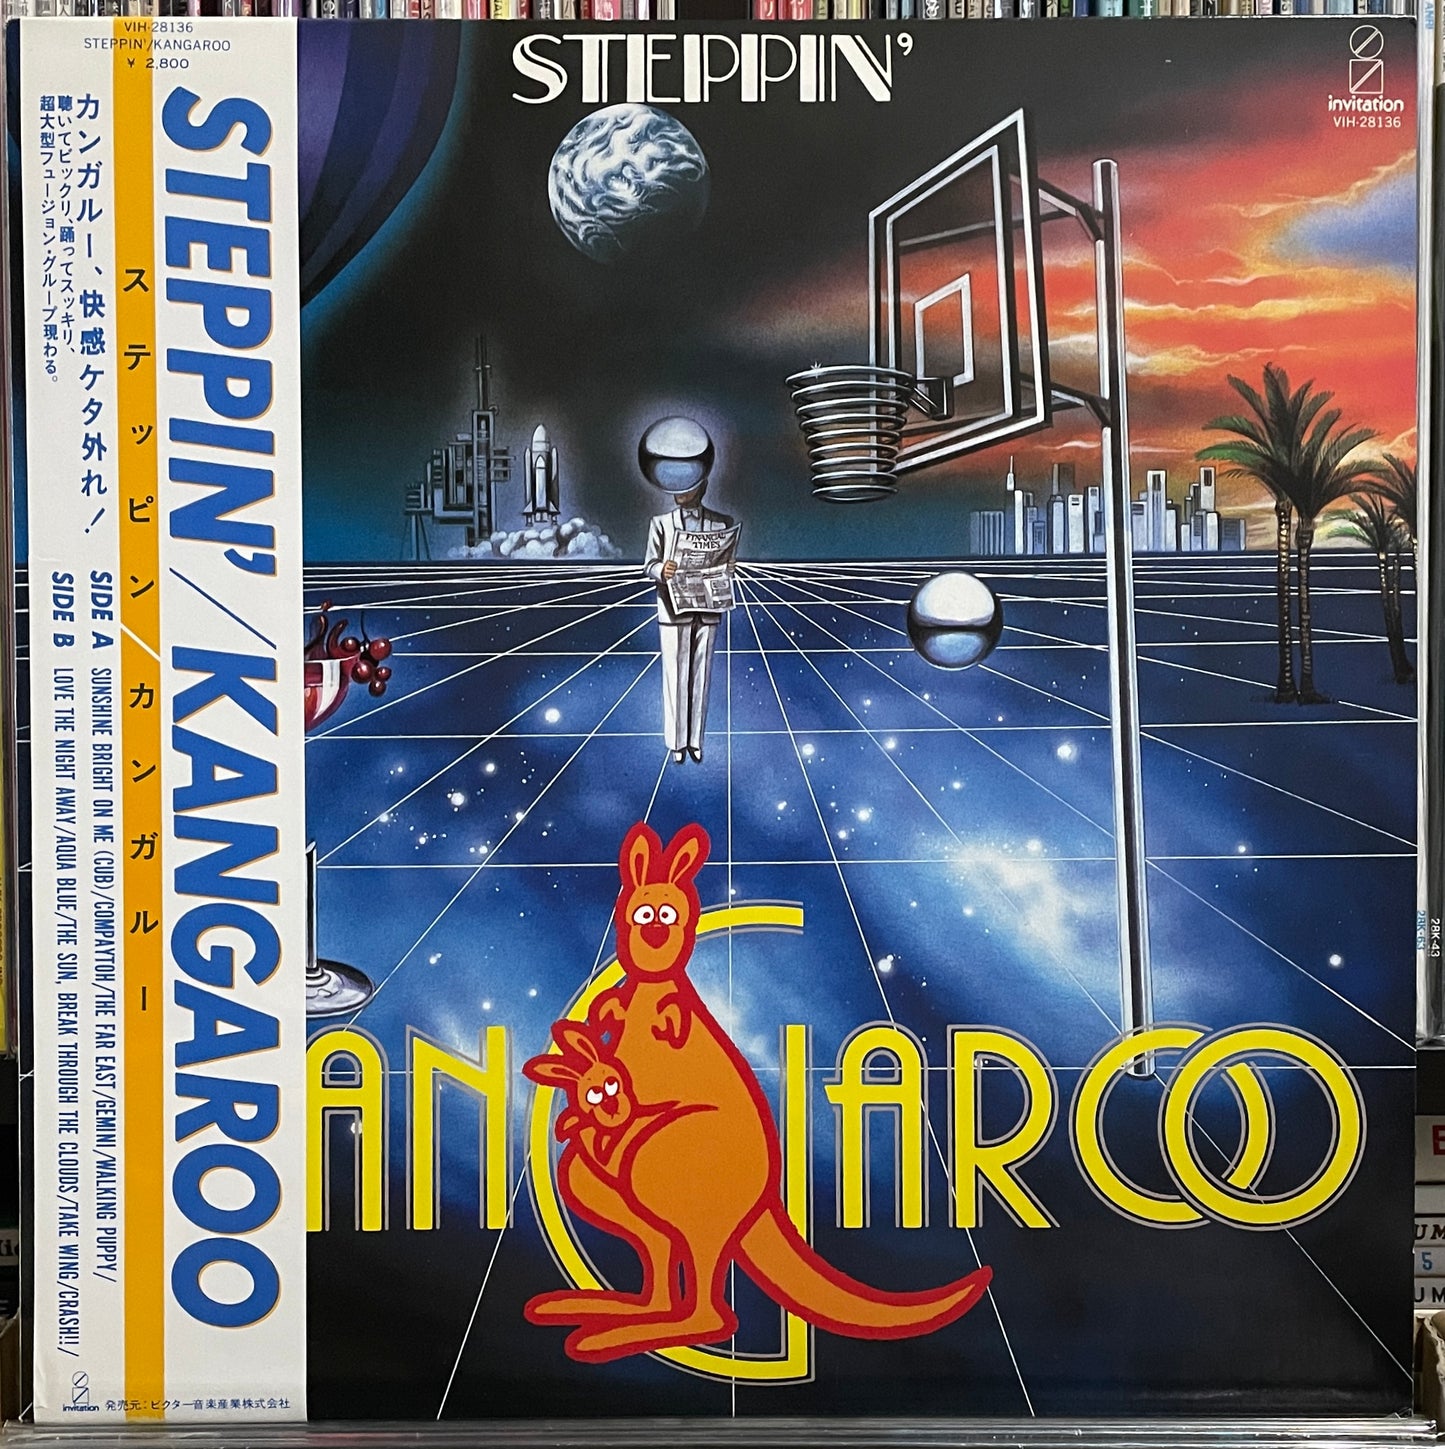 Kangaroo “Steppin’” (1983)